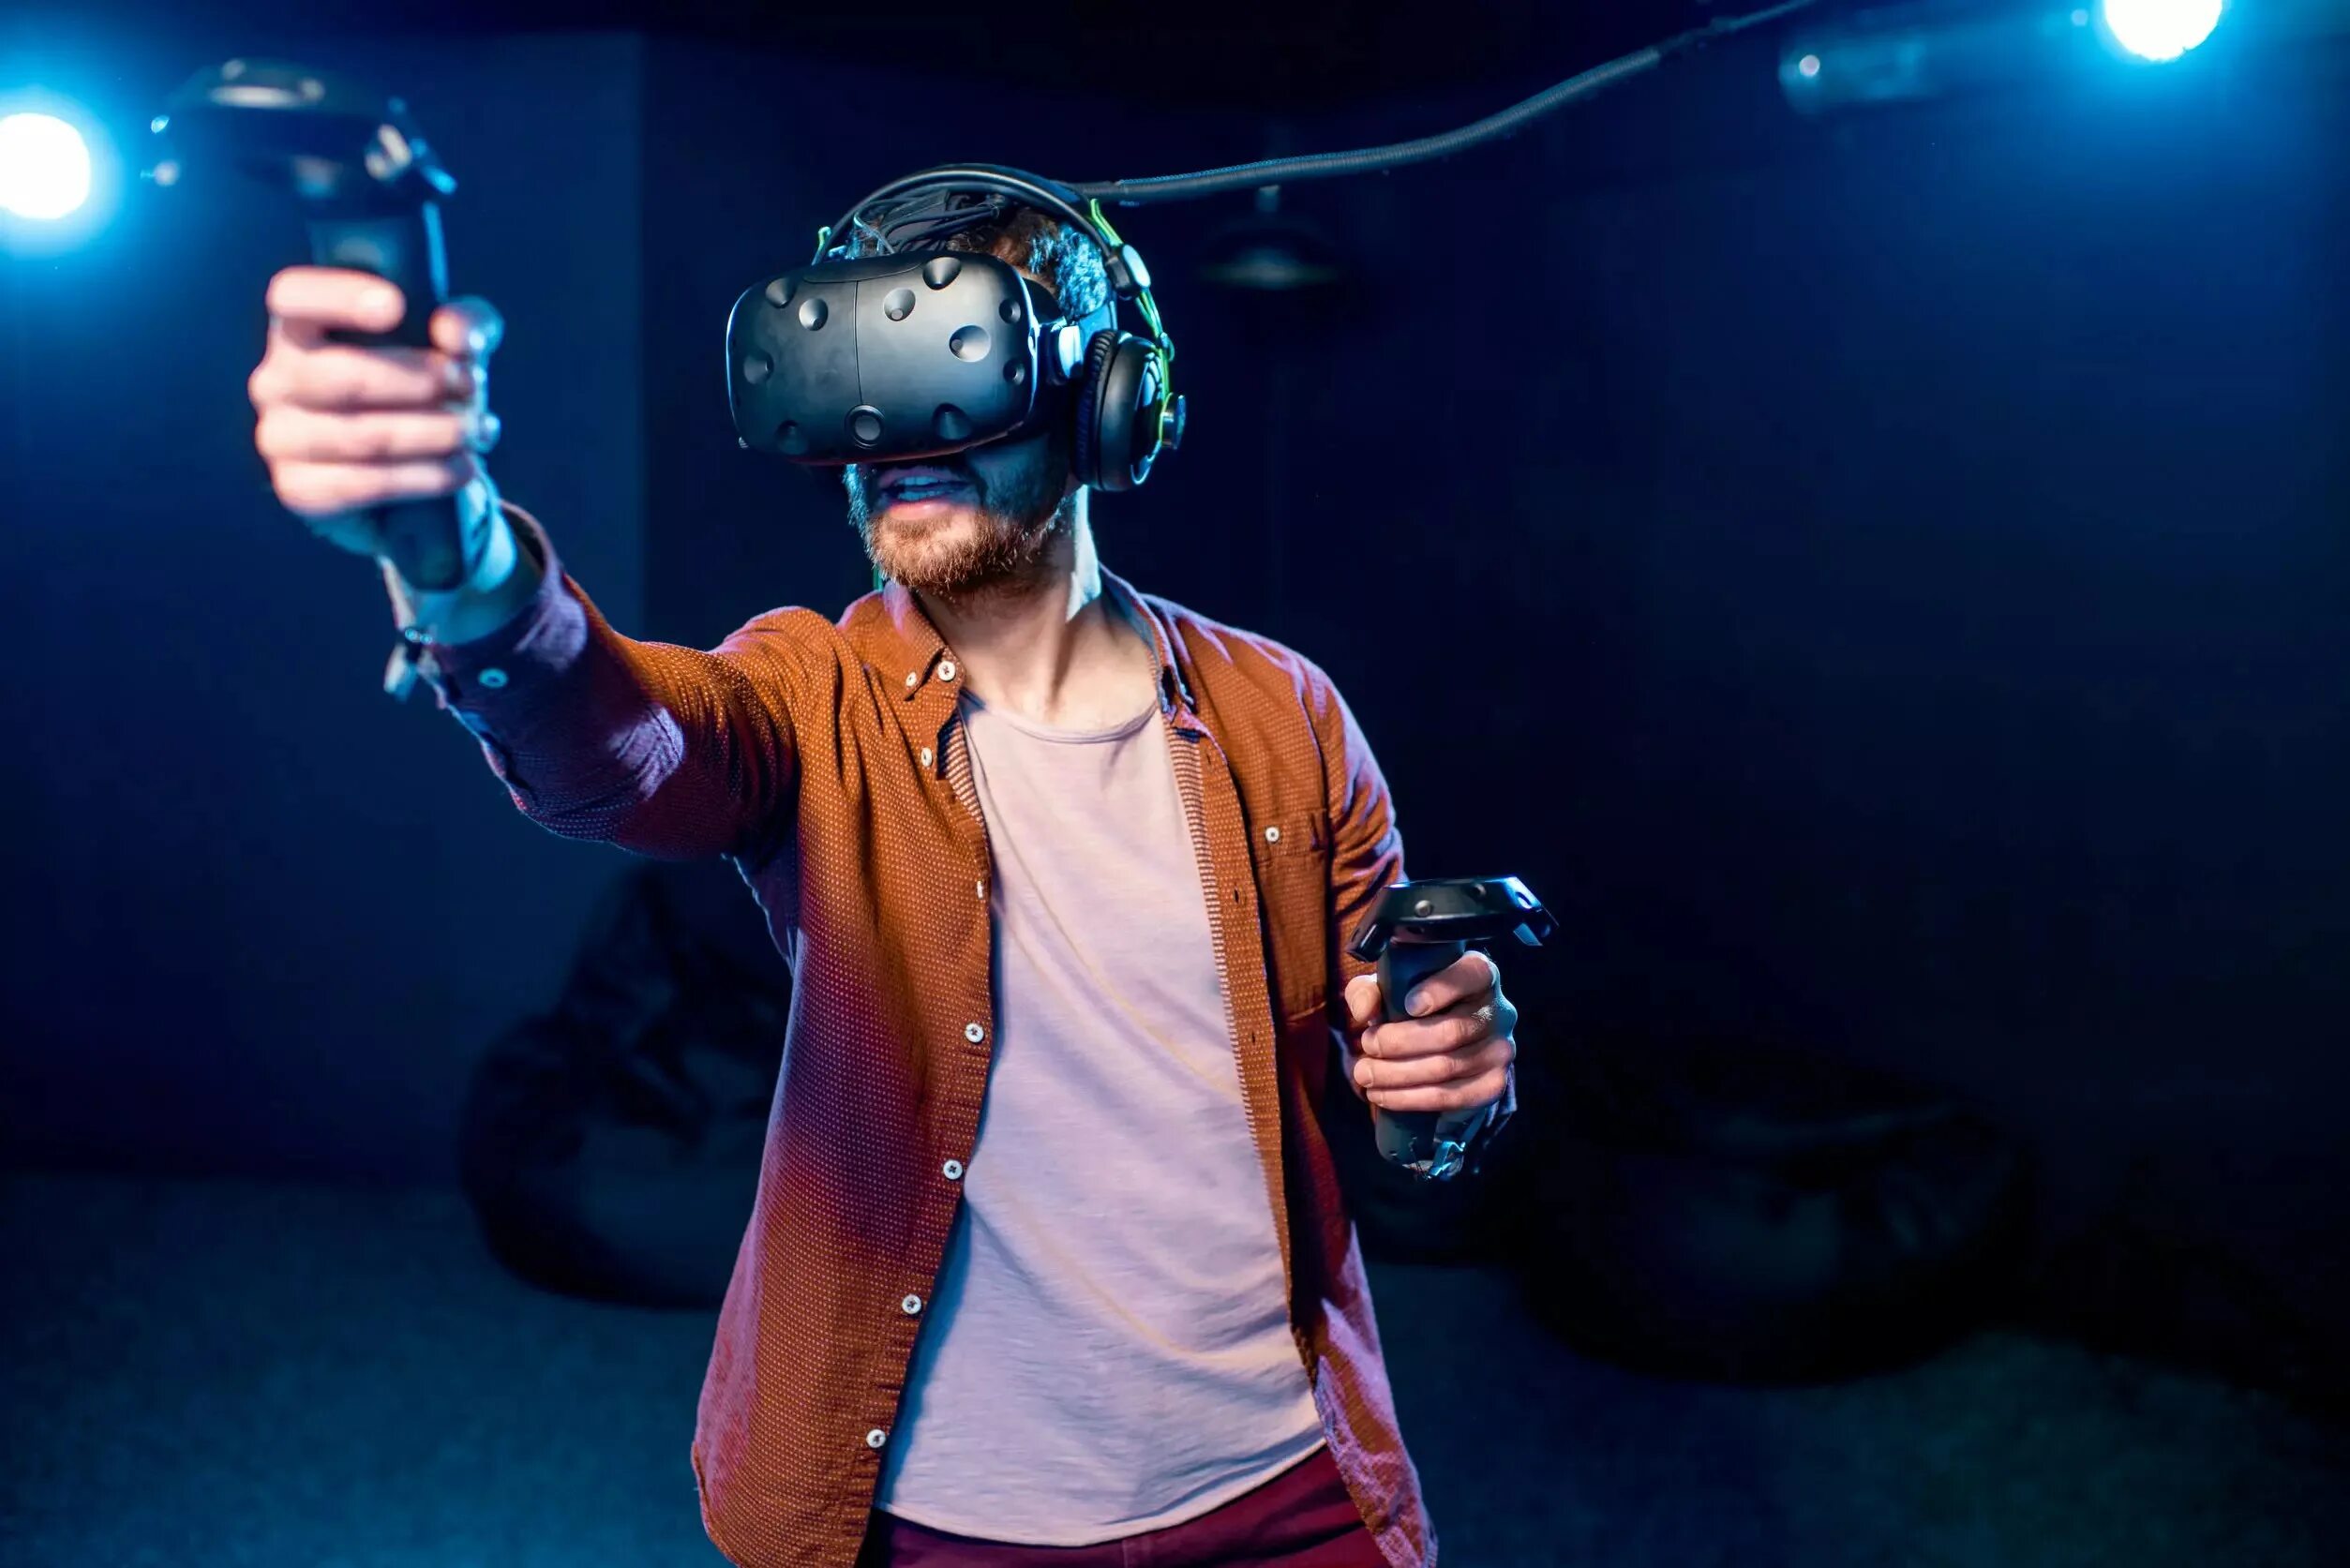 Игрок vr. Игровая виртуальная реальность. Игры для шлема виртуальной реальности. Шлем виртуальной реальности. Парень в виртуальной реальности.